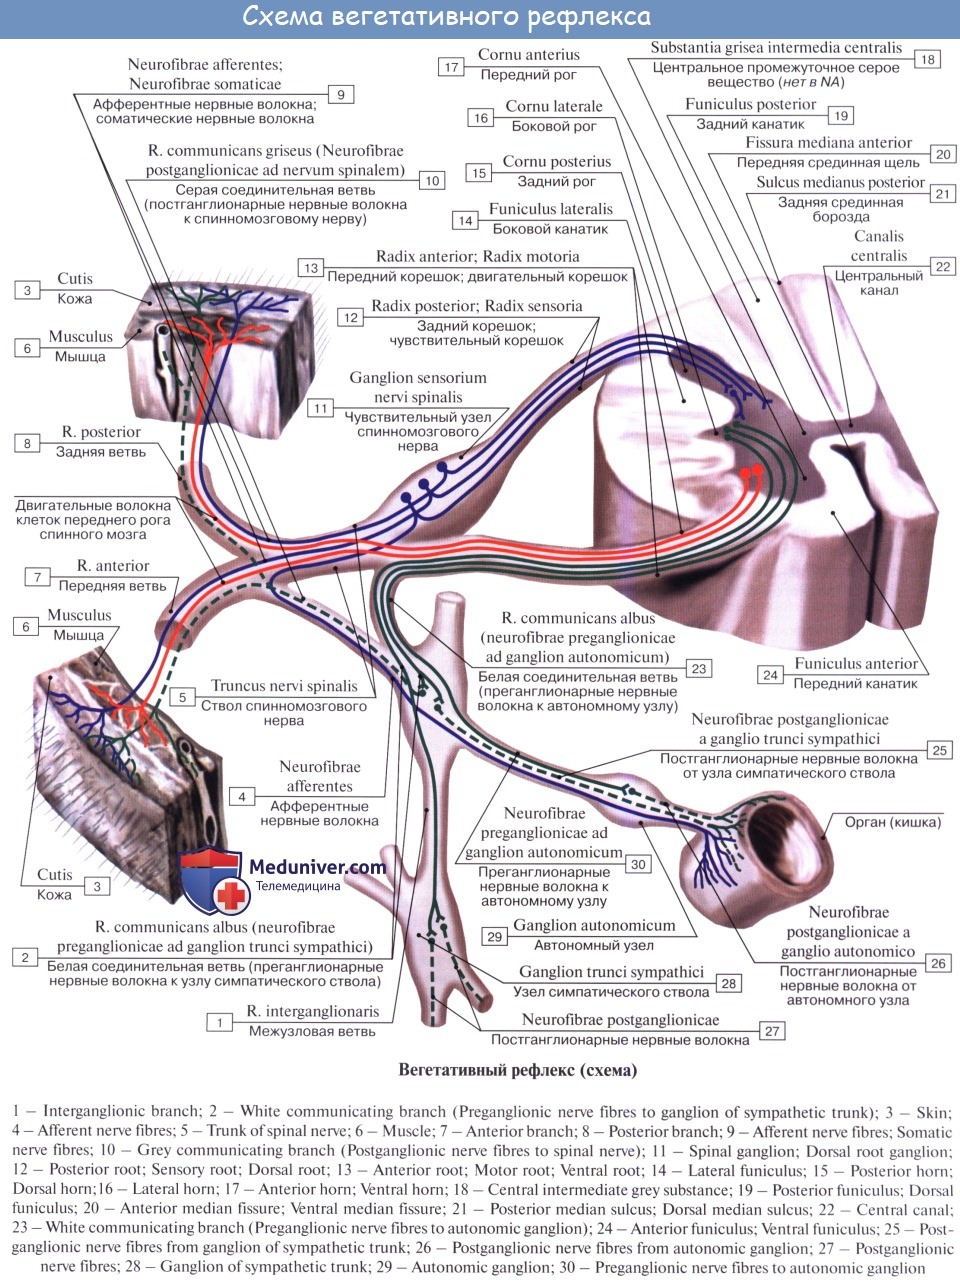 Какие процессы происходят при активизации центров изображенного на рисунке отдела нервной системы